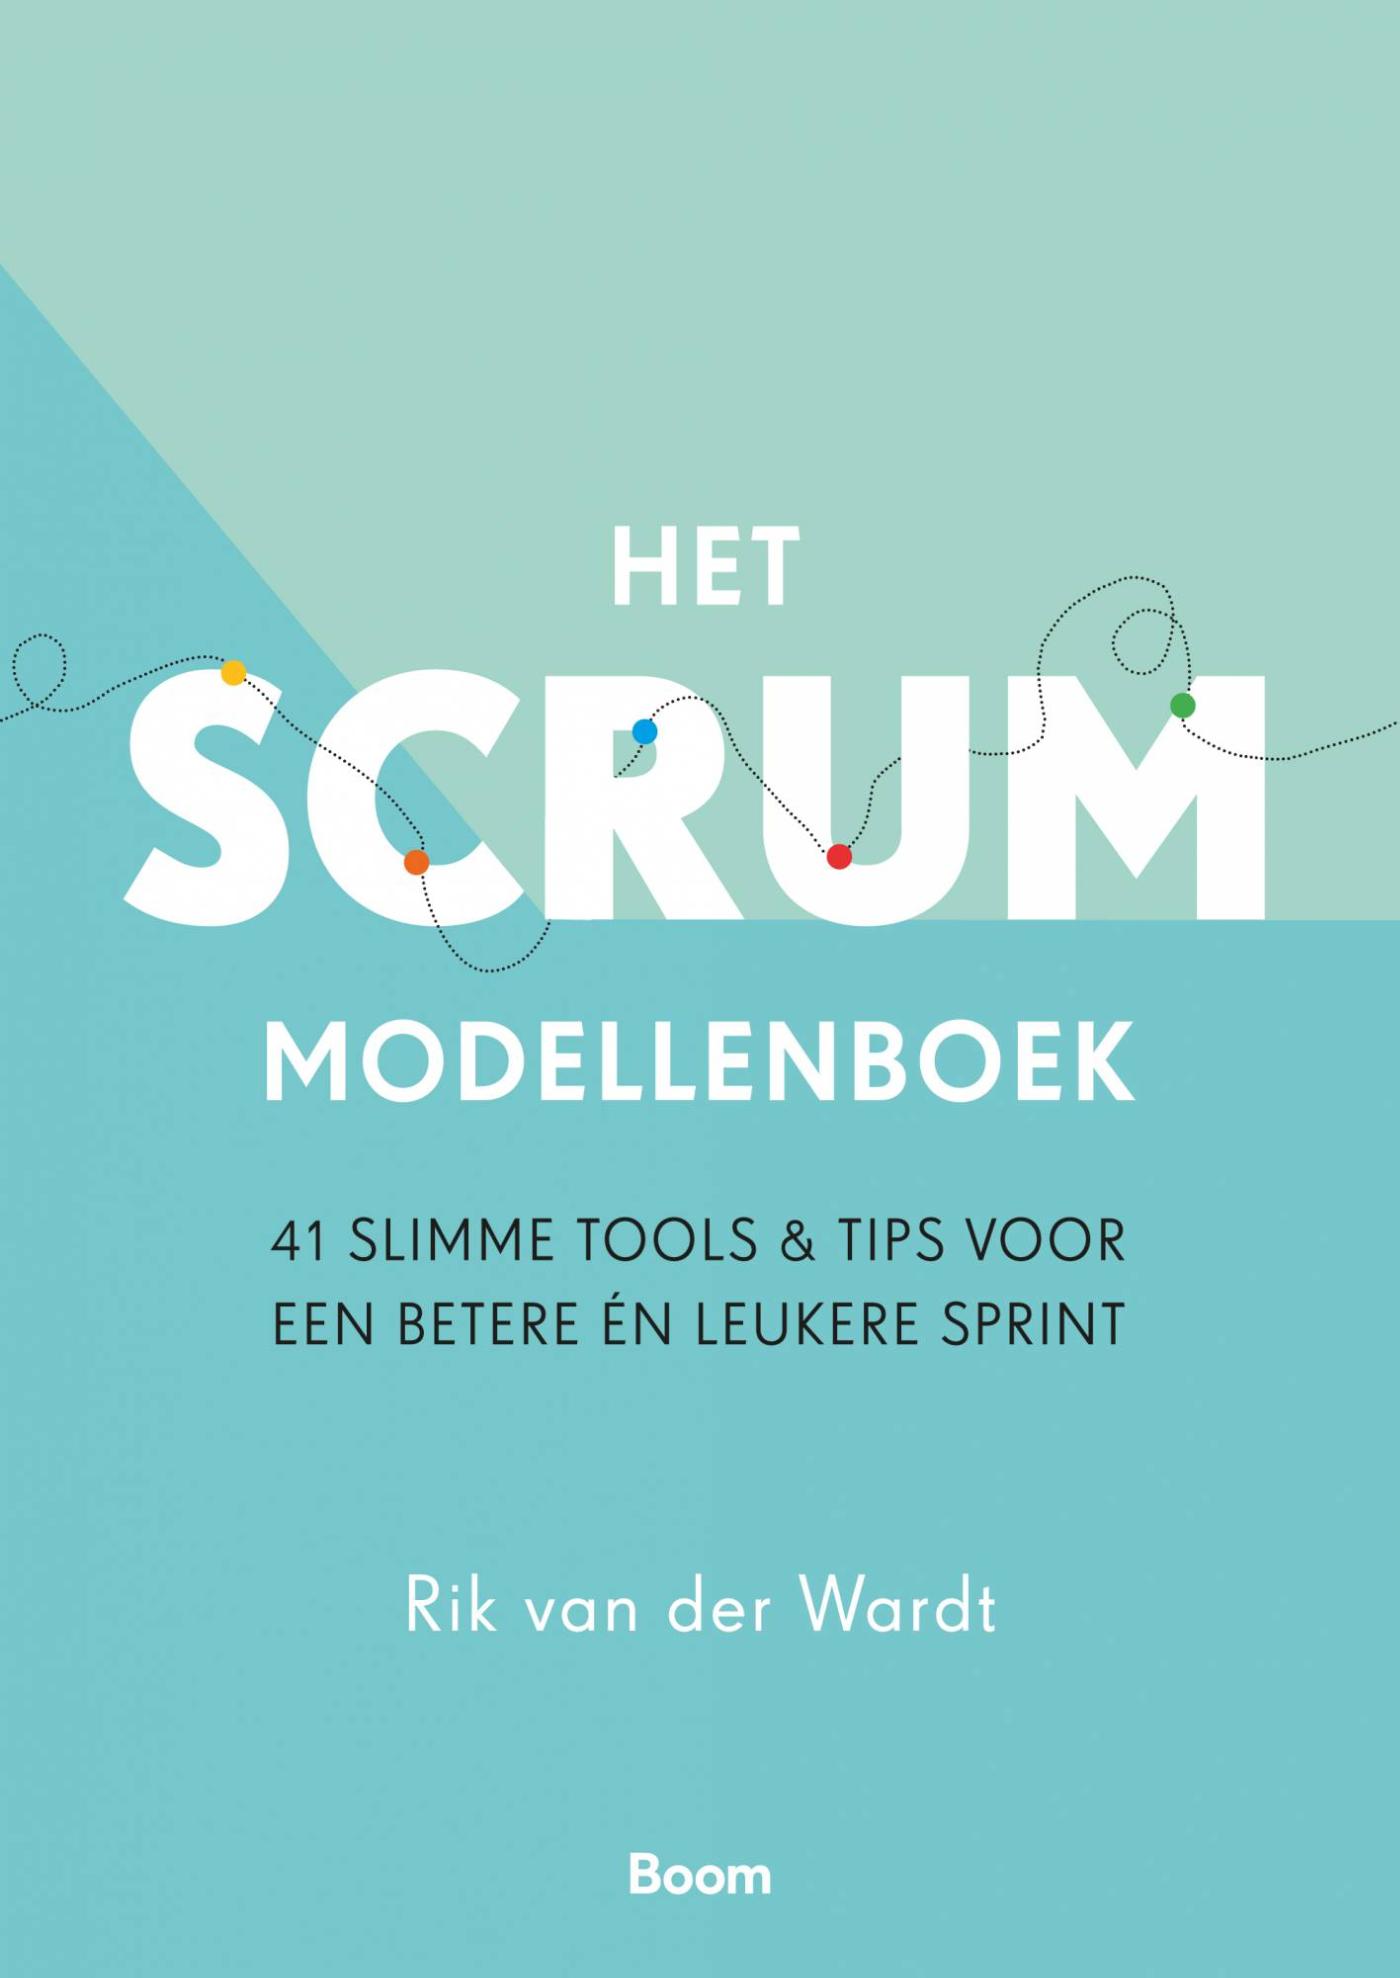 Het Scrum Modellenboek (Ebook)